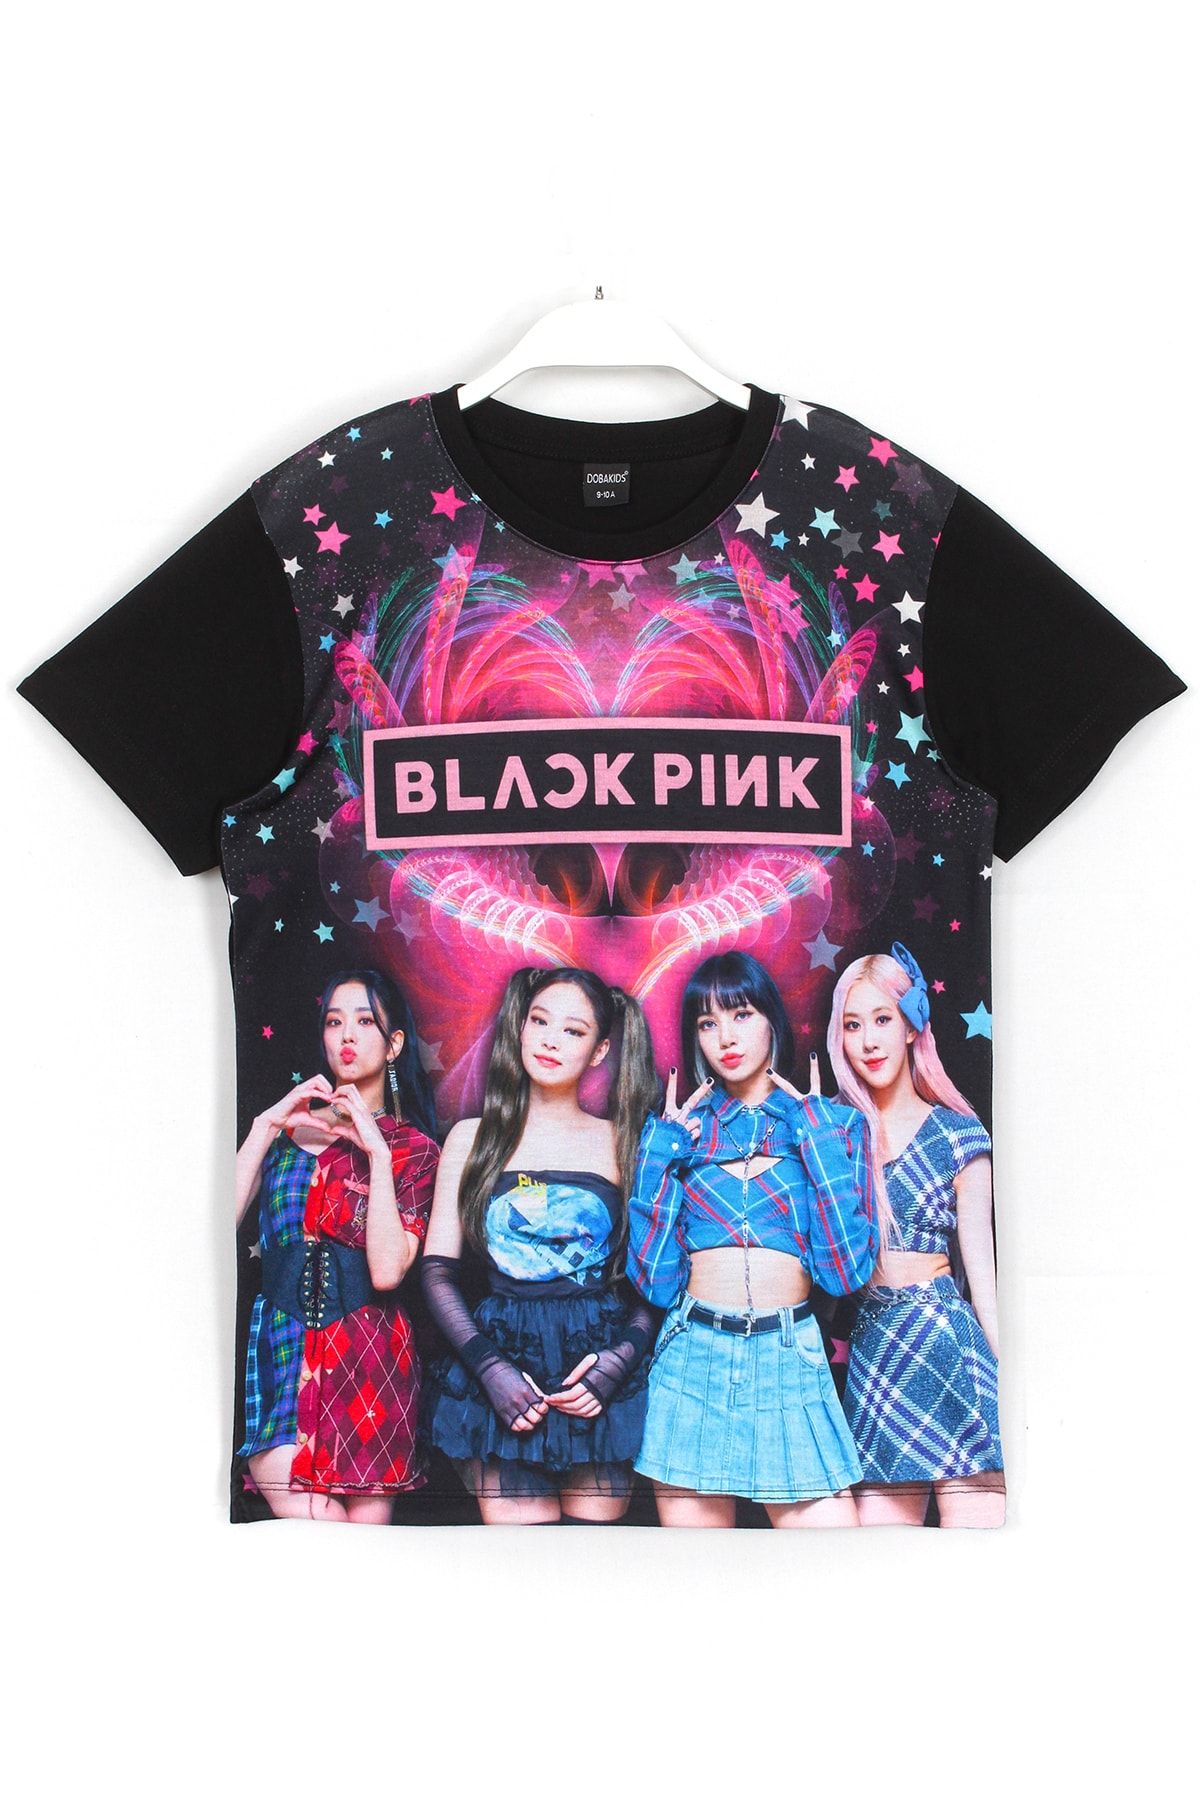 DobaKids Blackpink K-pop Grup Dijital Baskı Kız Çocuk Siyah Renk T-shirt